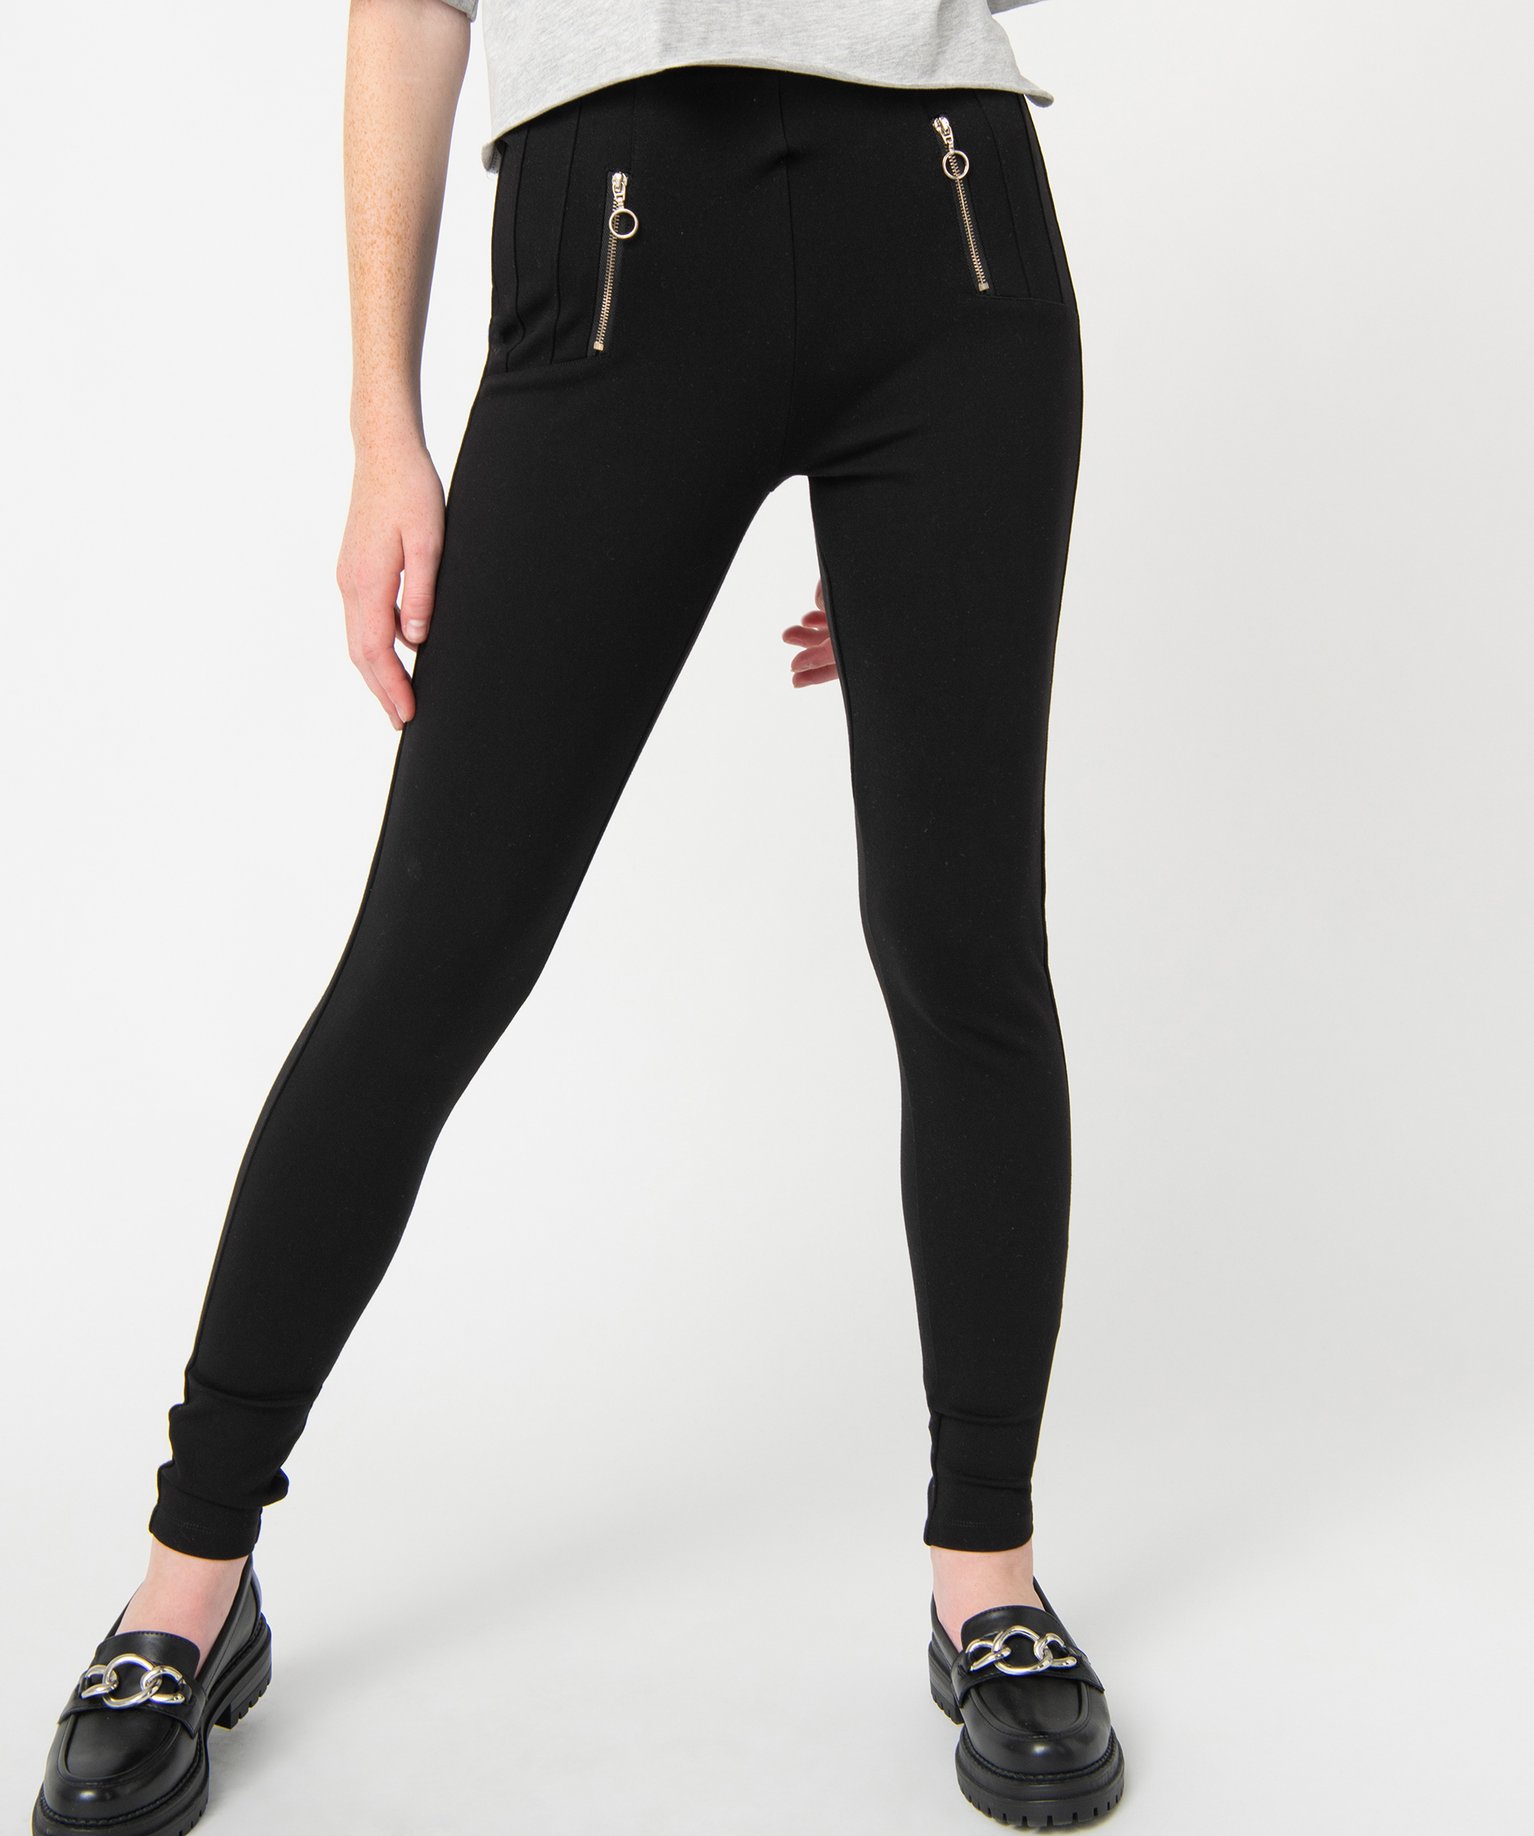 legging femme avec surpiqures et zip fantaisie noir leggings et jeggings